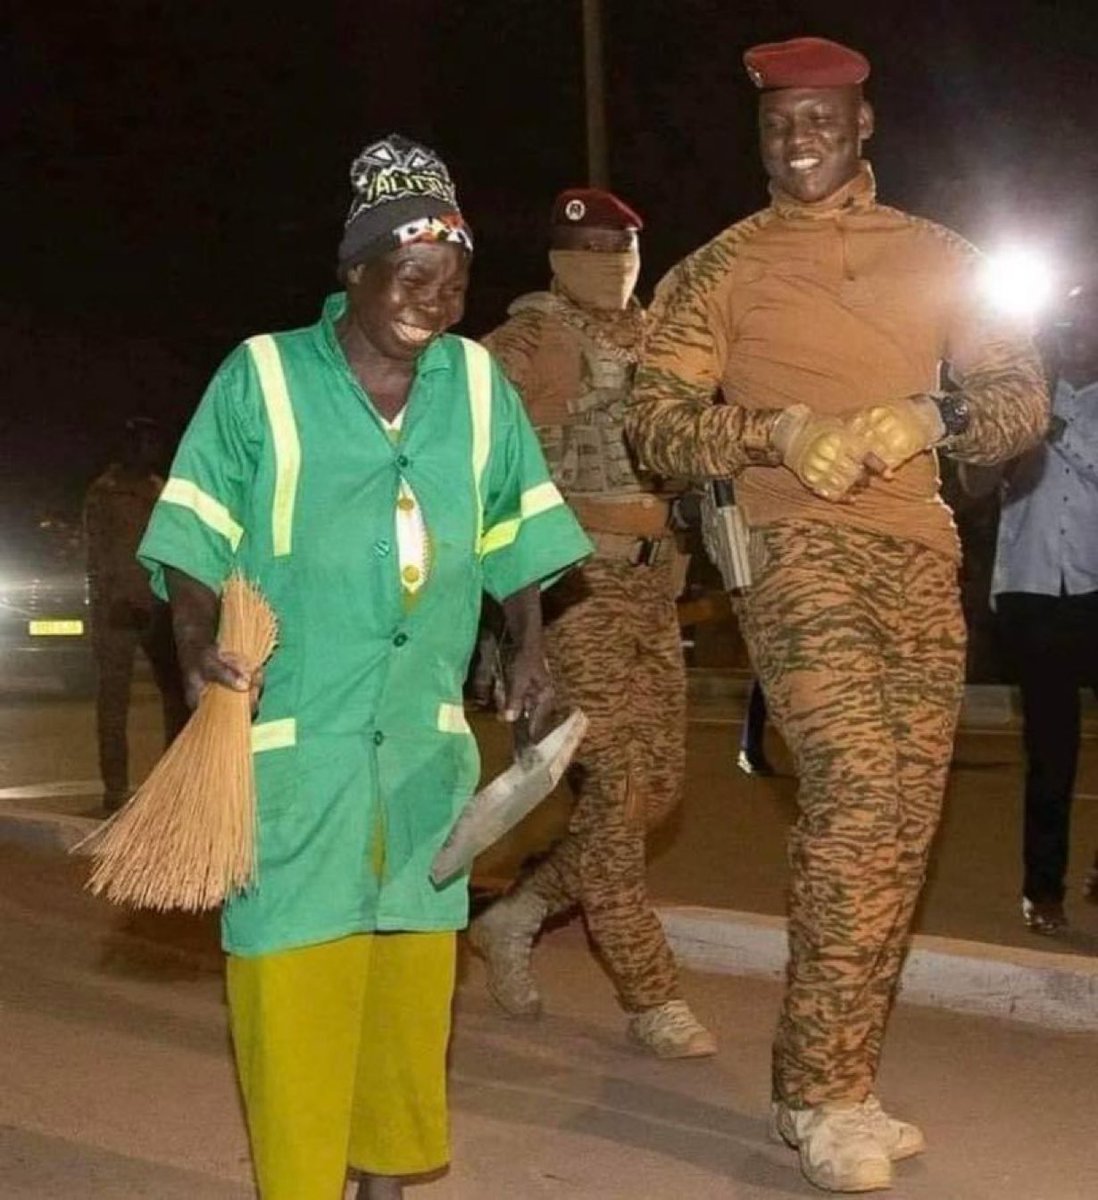 O presidente Ibrahim Traore de Burkina Faso 🇧🇫 segue criando políticas de valorização dos trabalhadores em seu país. Ele ajustou o valor do salário mínimo em quase 50% desde que chegou ao poder. Ele também diminuiu o salário de políticos e ministros em 30%.